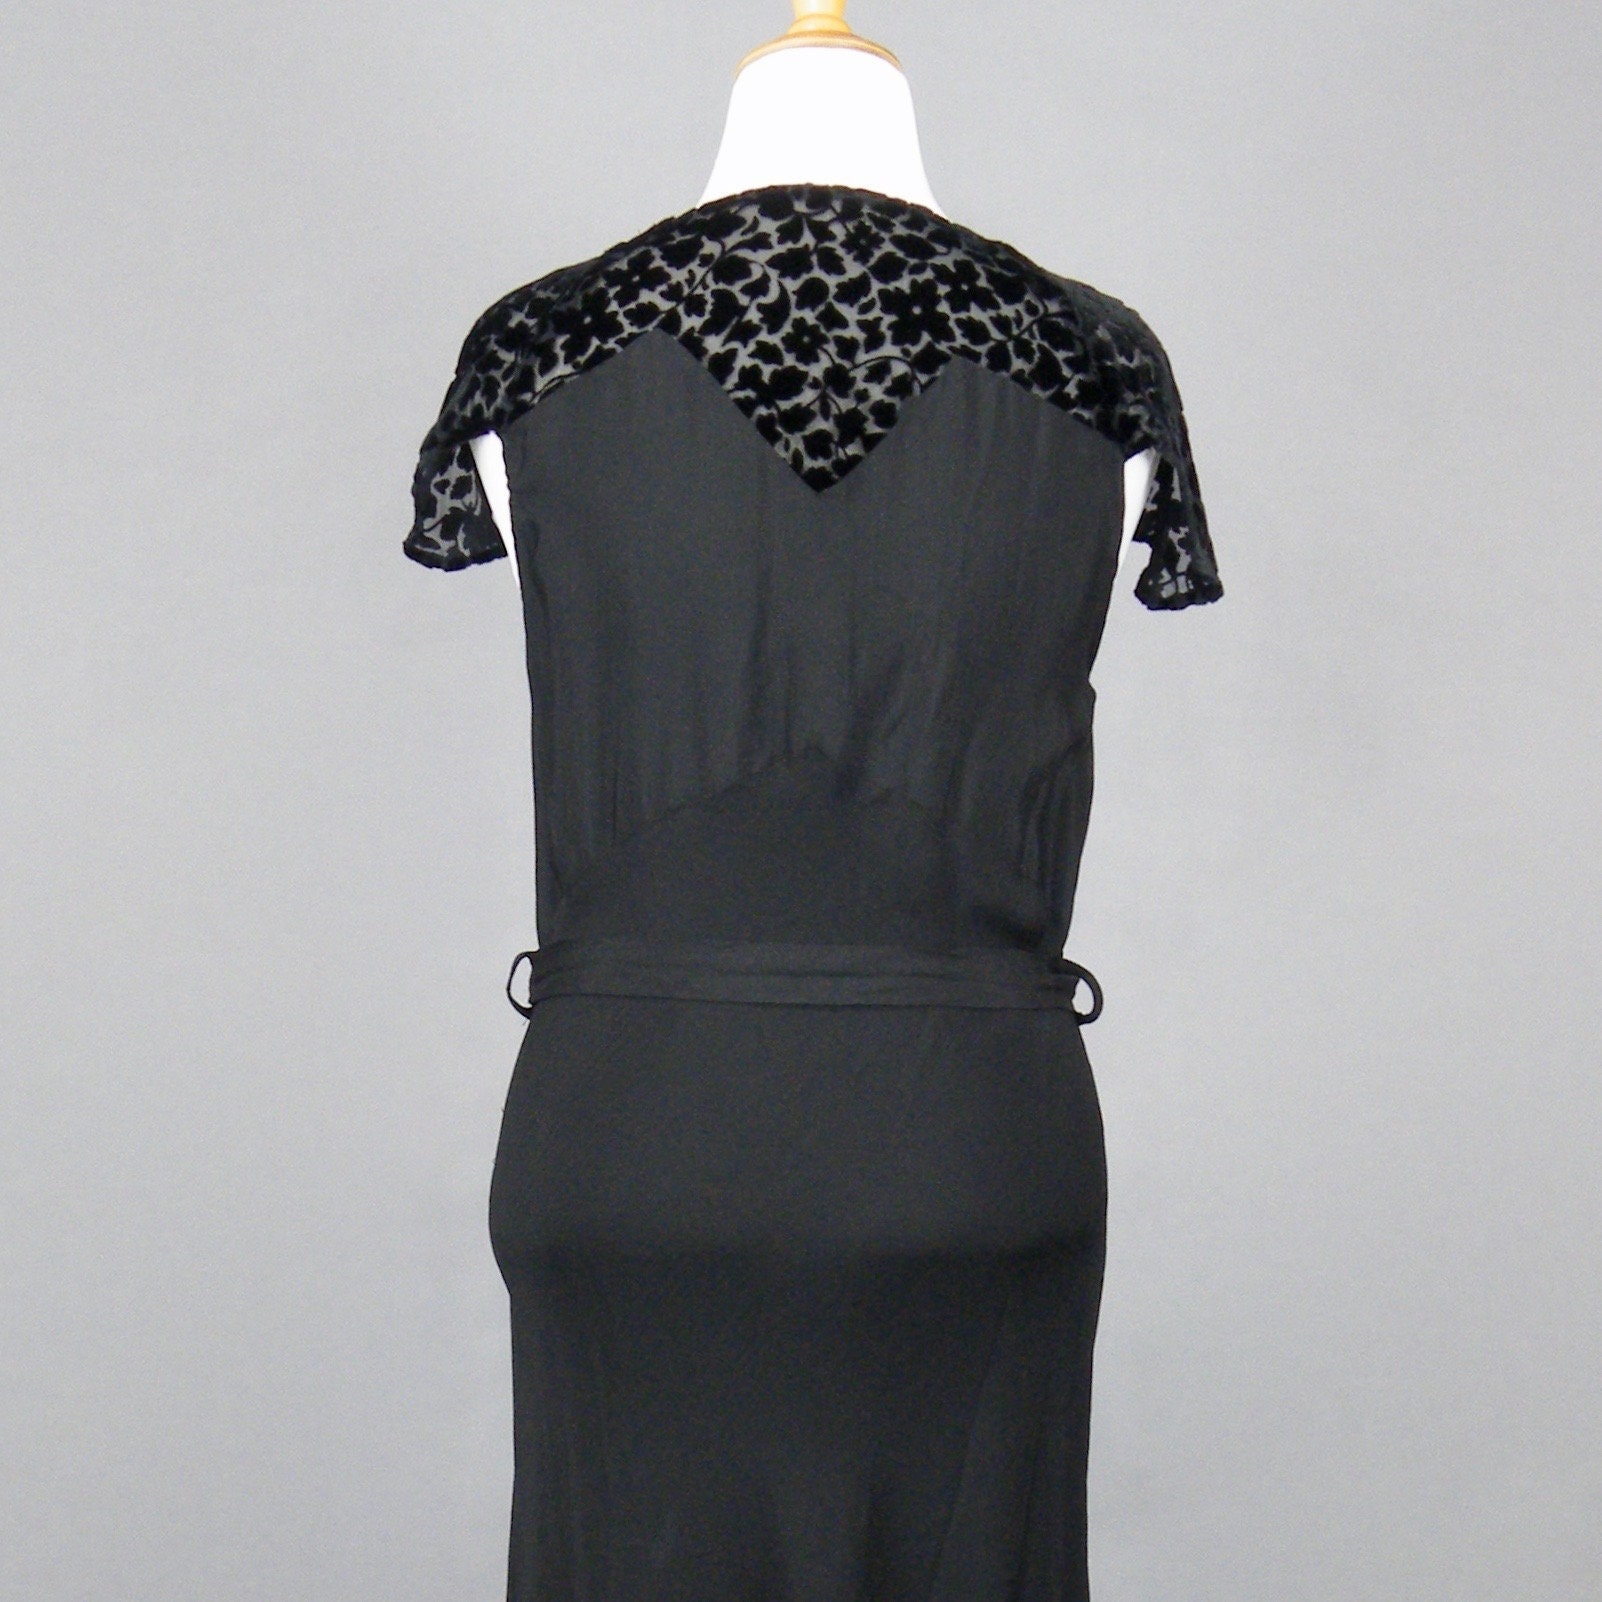 Vintage 1930s Black Rayon Crepe Cut Velvet Bias Cut Evening Dress, M/L - L